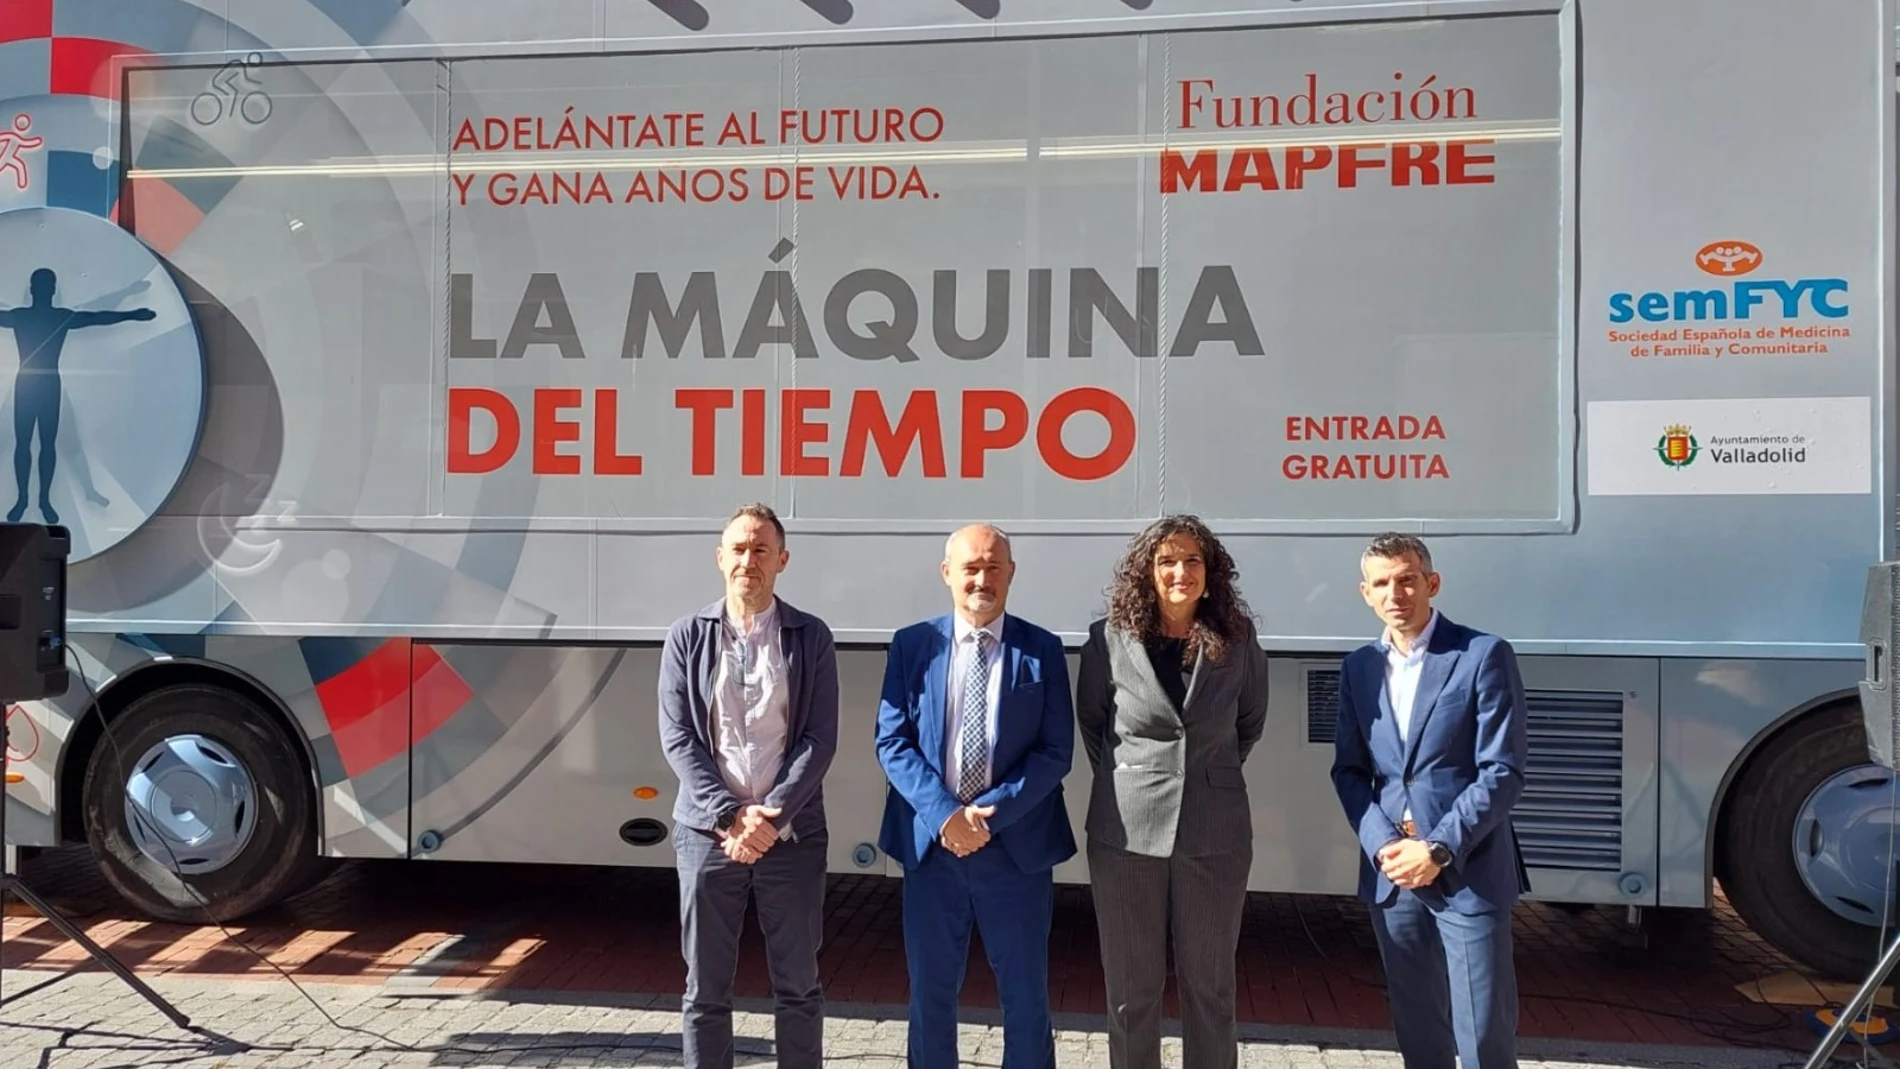 La máquina del tiempo de Fundación Mapfre llega a Valladolid